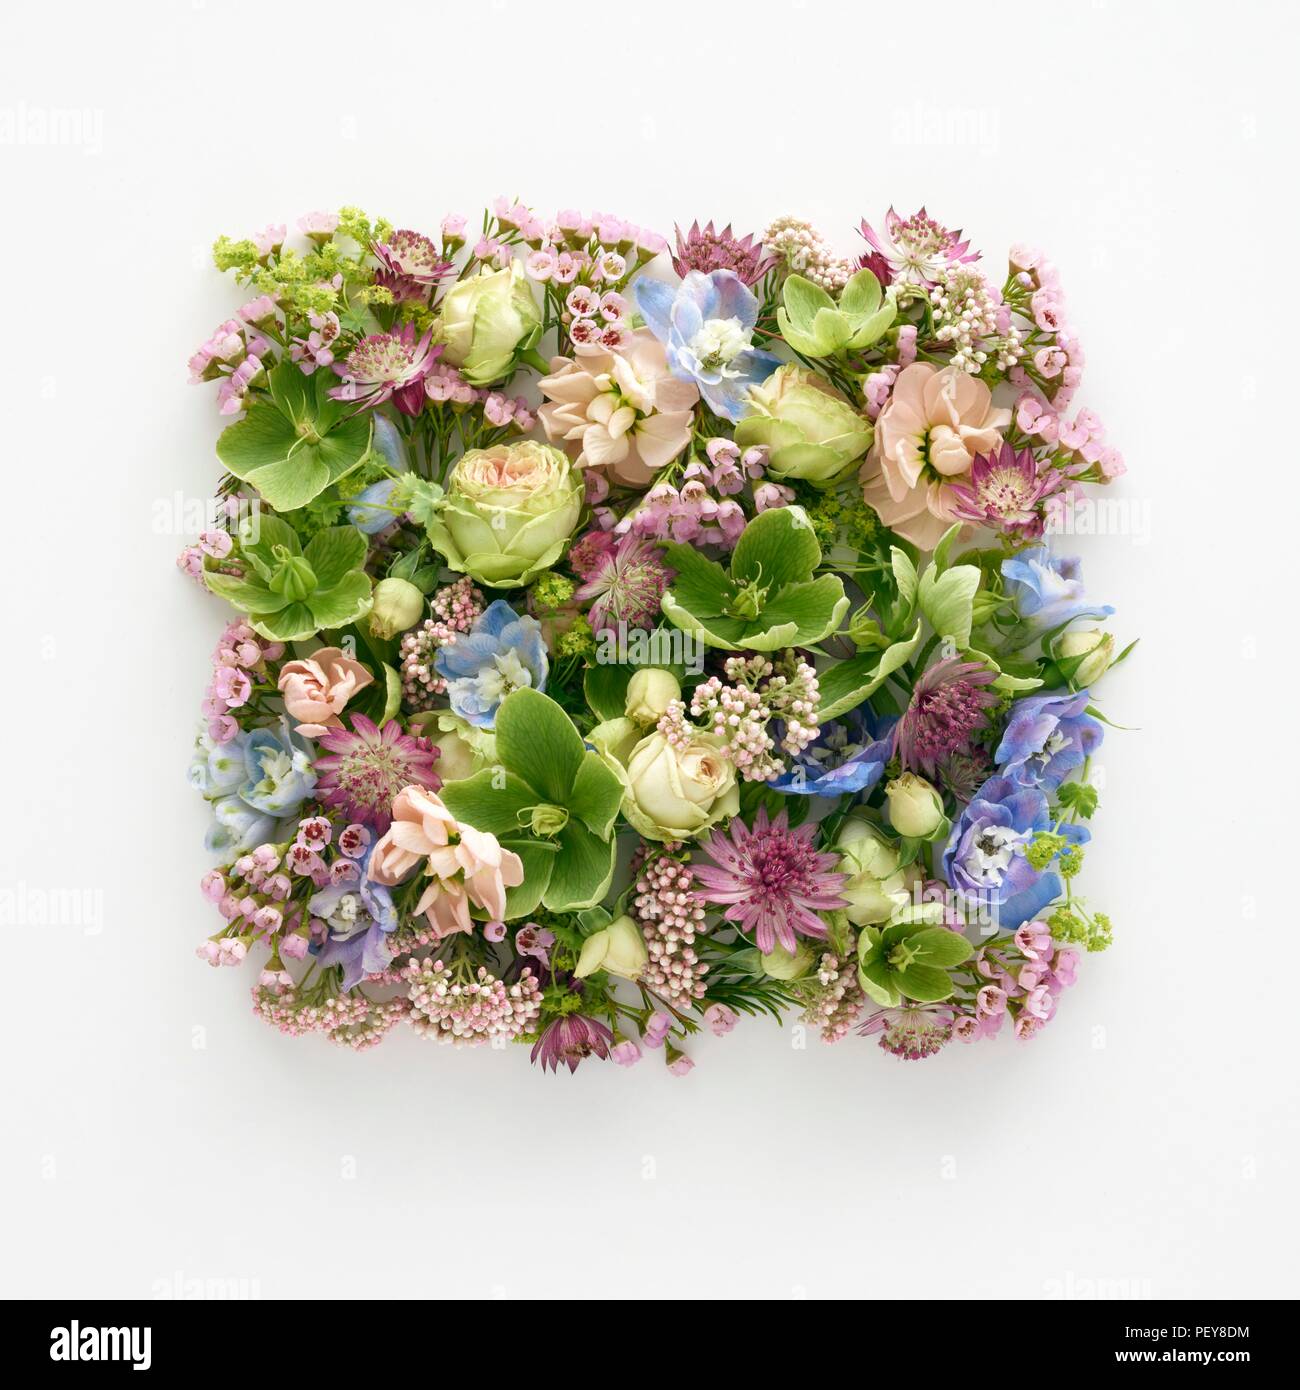 Les fleurs de printemps dans la région de forme carrée, studio shot. Banque D'Images